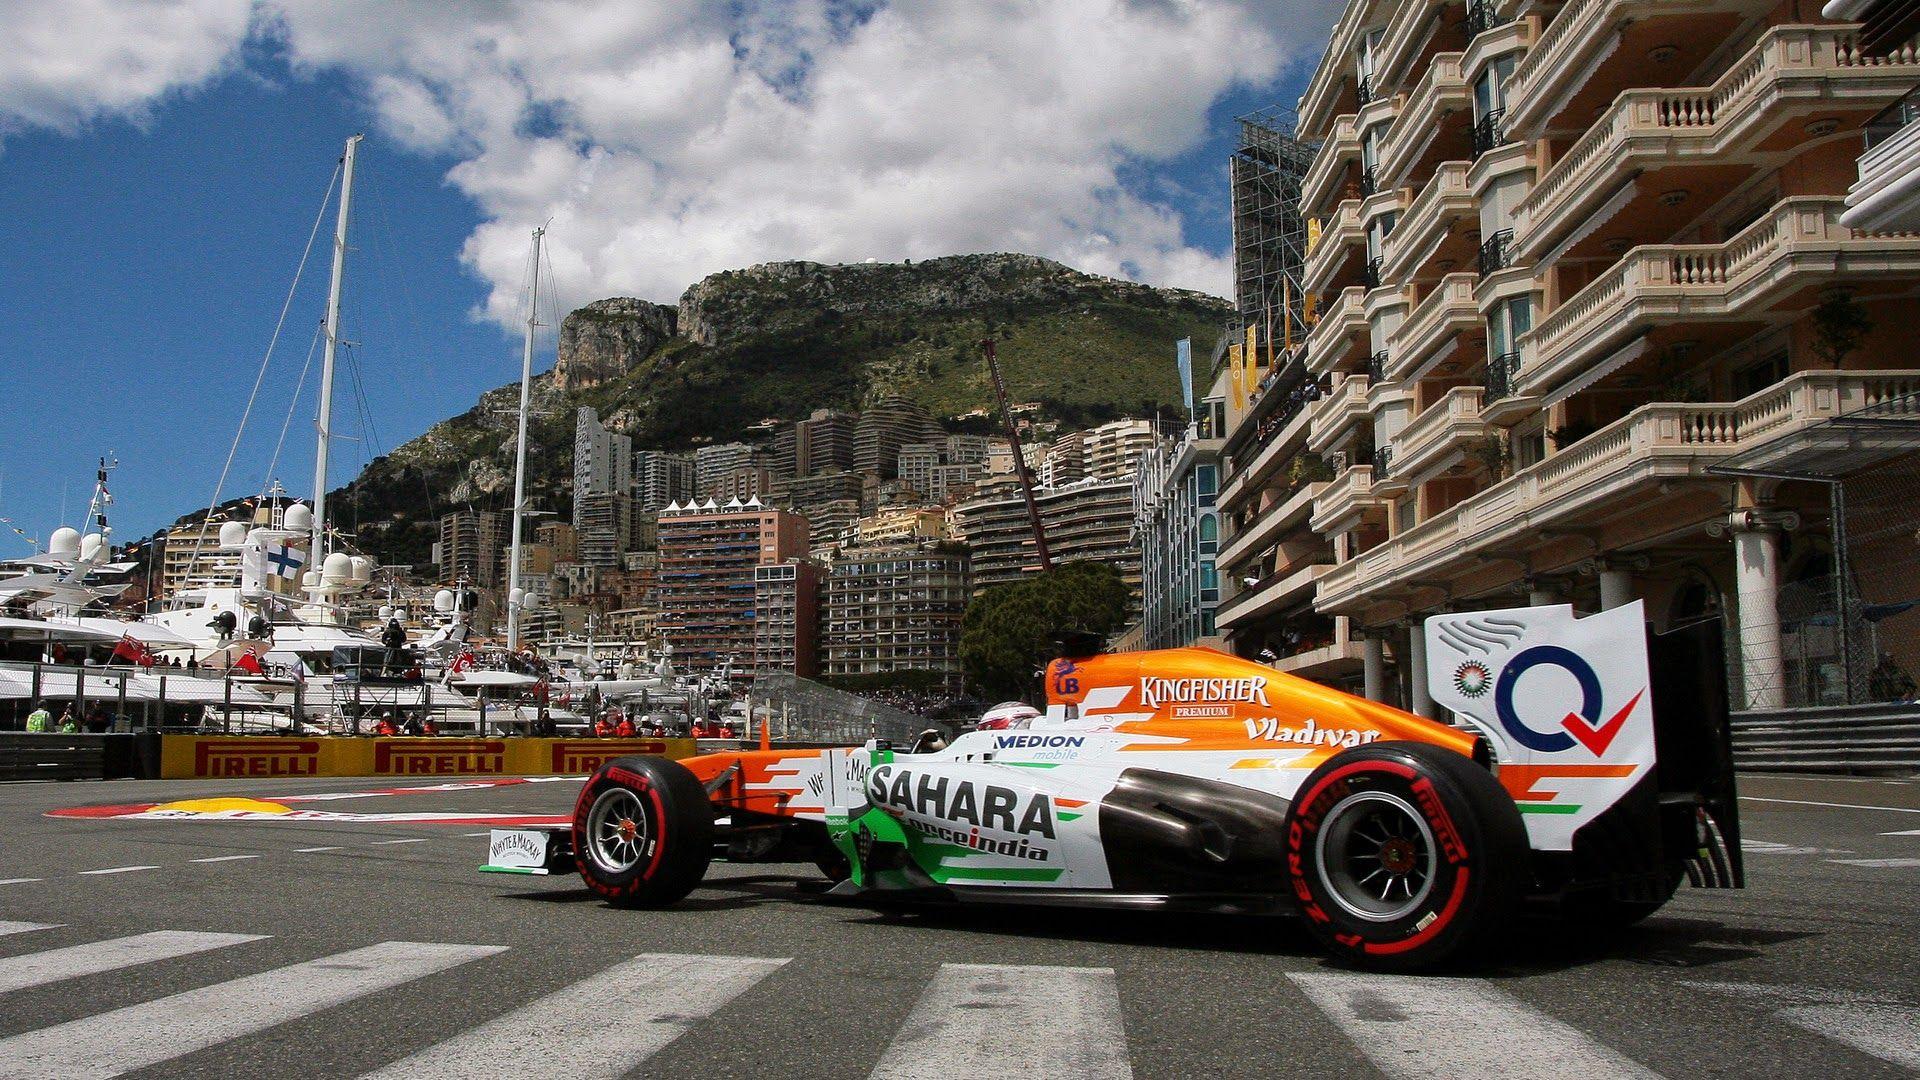 Monaco Grand Prix. Grand Prix of Monaco Wallpaper Free HD